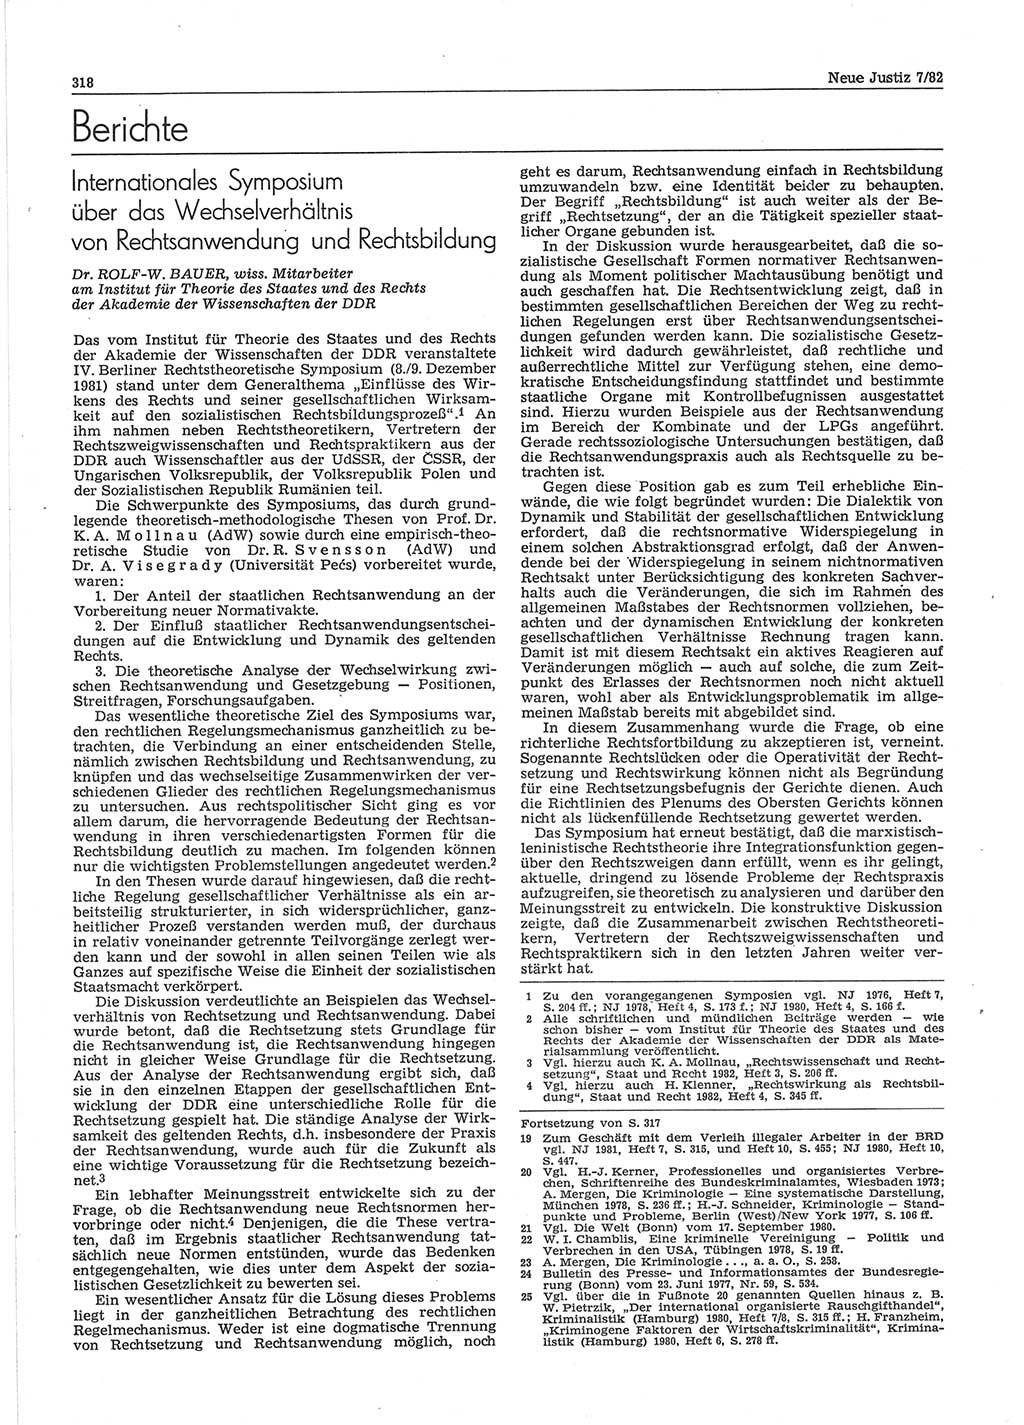 Neue Justiz (NJ), Zeitschrift für sozialistisches Recht und Gesetzlichkeit [Deutsche Demokratische Republik (DDR)], 36. Jahrgang 1982, Seite 318 (NJ DDR 1982, S. 318)